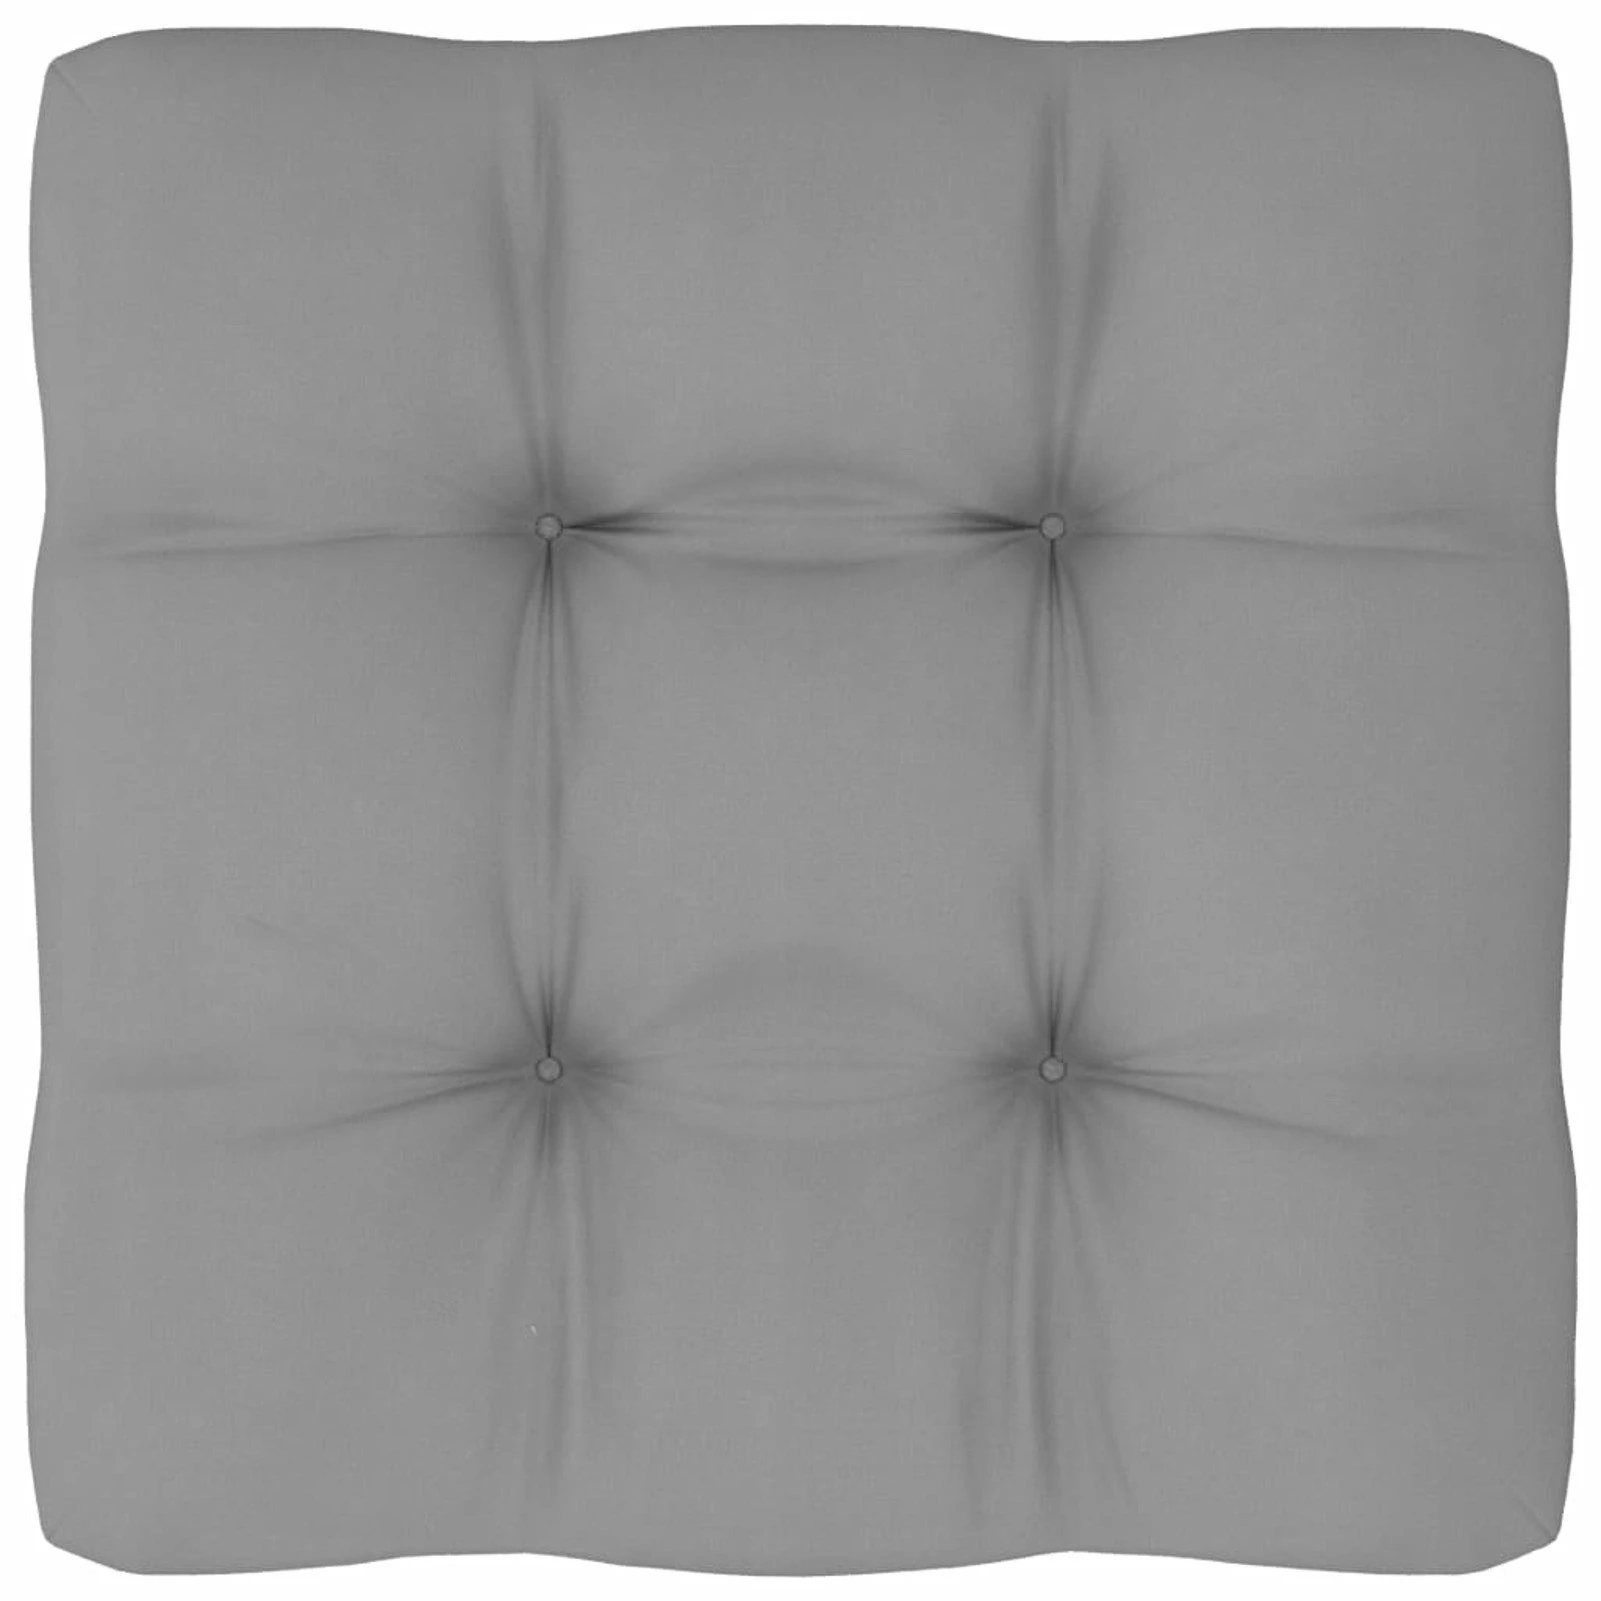 orange cushions Pallet Sofa Cushion Gray 19.7"x19.7"x3.9" outdoor cushion covers